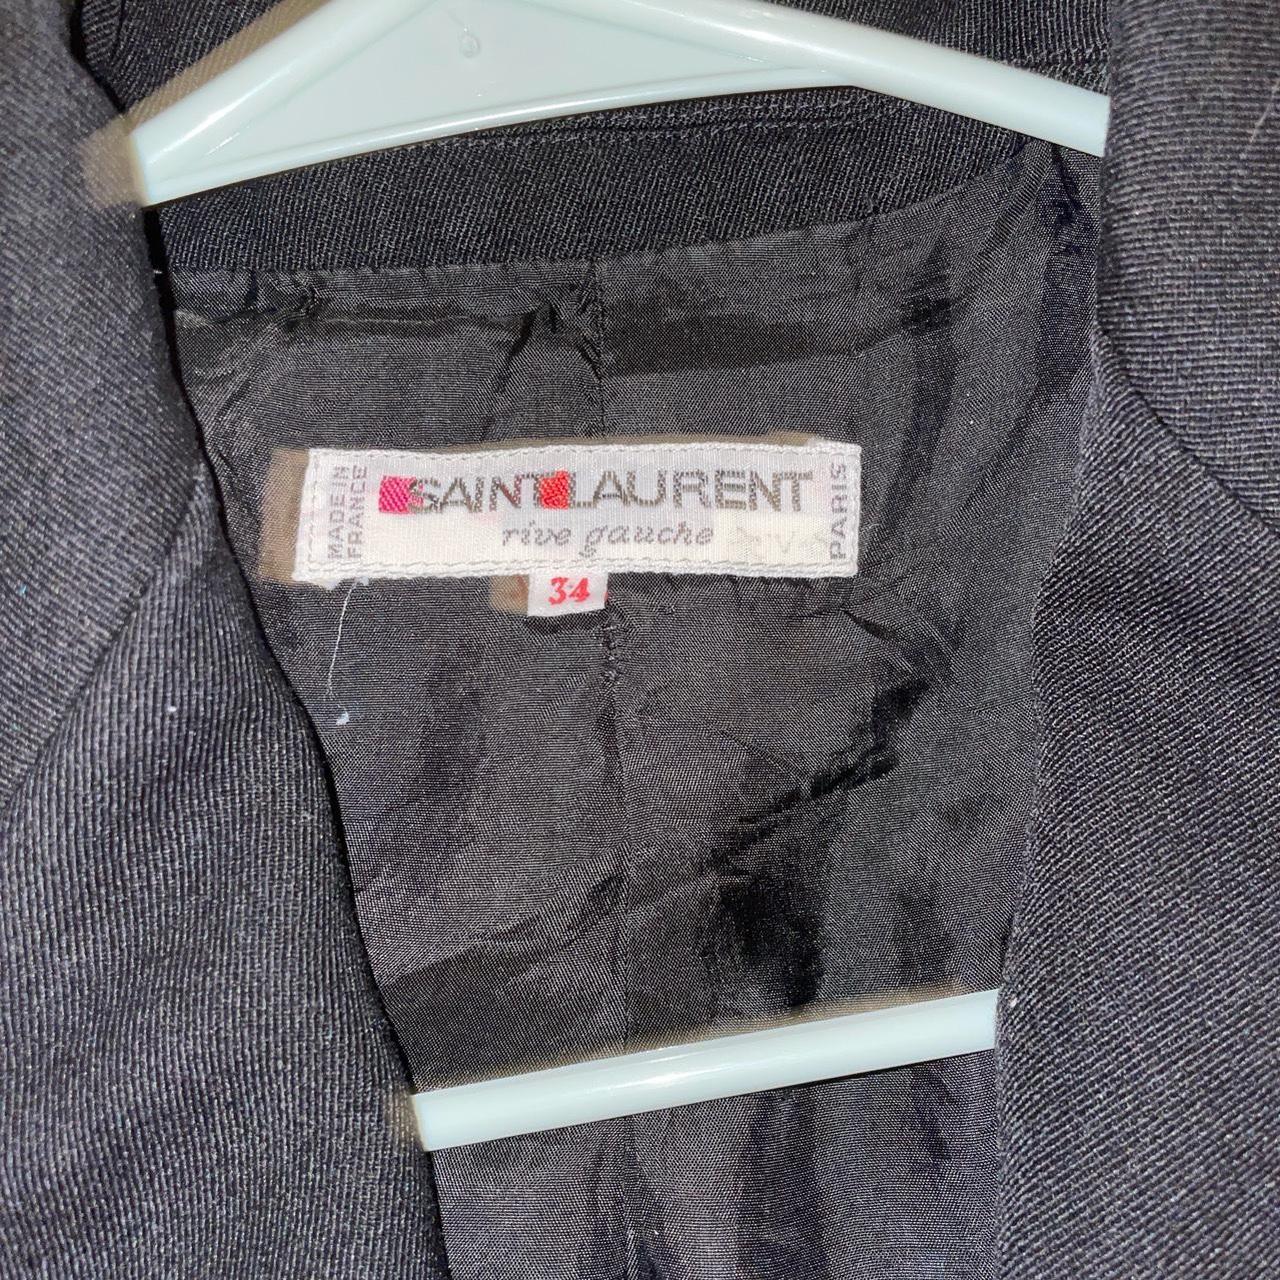 Saint Laurent cropped blazer size 34 Peacoat Xs... - Depop